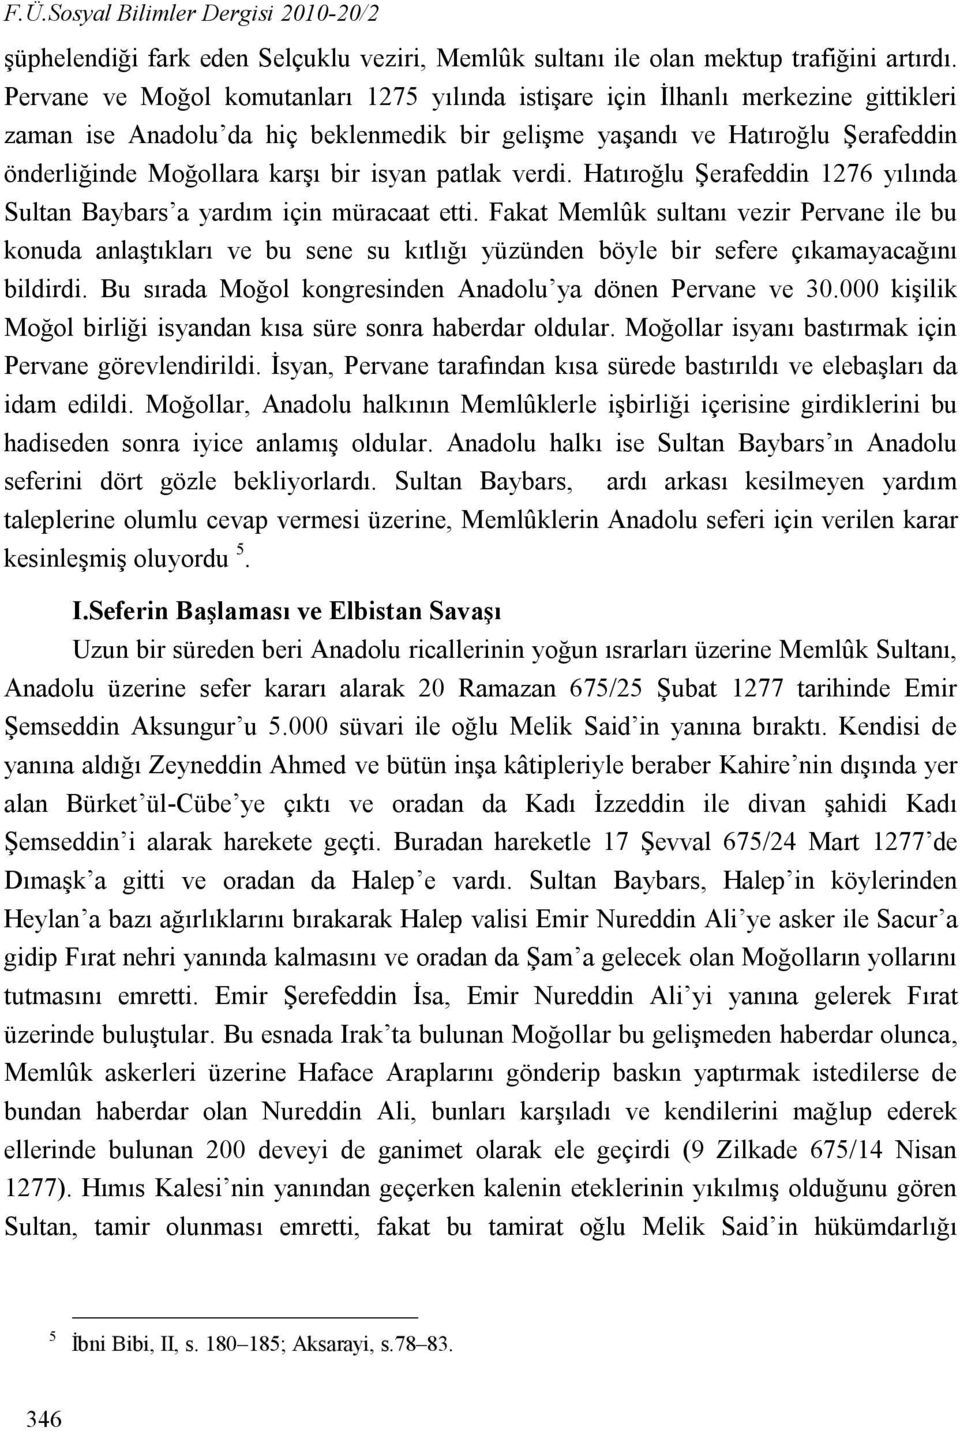 isyan patlak verdi. Hatıroğlu Şerafeddin 1276 yılında Sultan Baybars a yardım için müracaat etti.